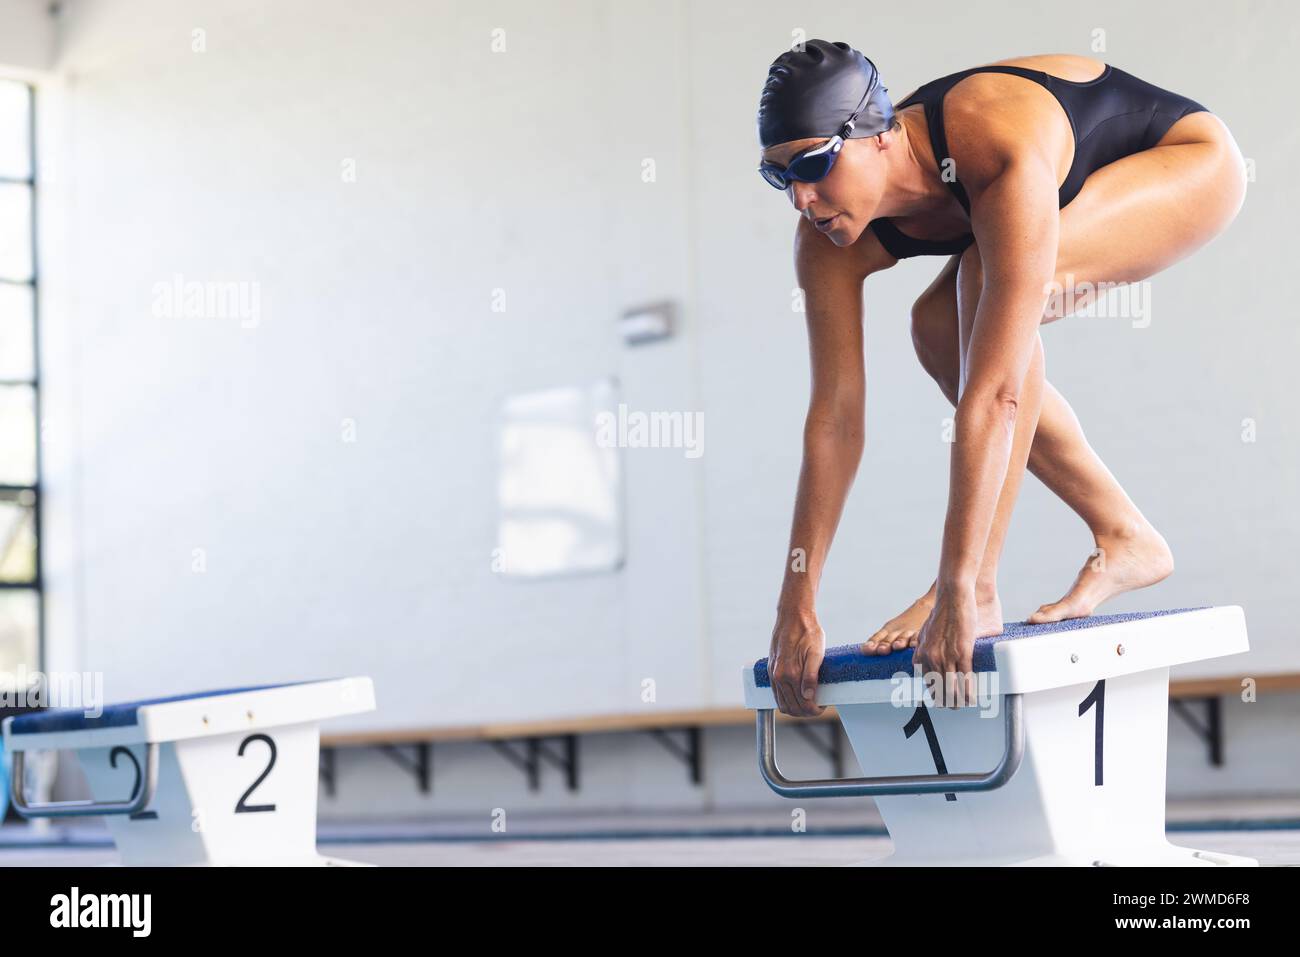 Die weibliche weibliche Sportlerin aus dem Kaukasus bereitet sich darauf vor, bei einem Wettkampf in einen Pool zu tauchen Stockfoto